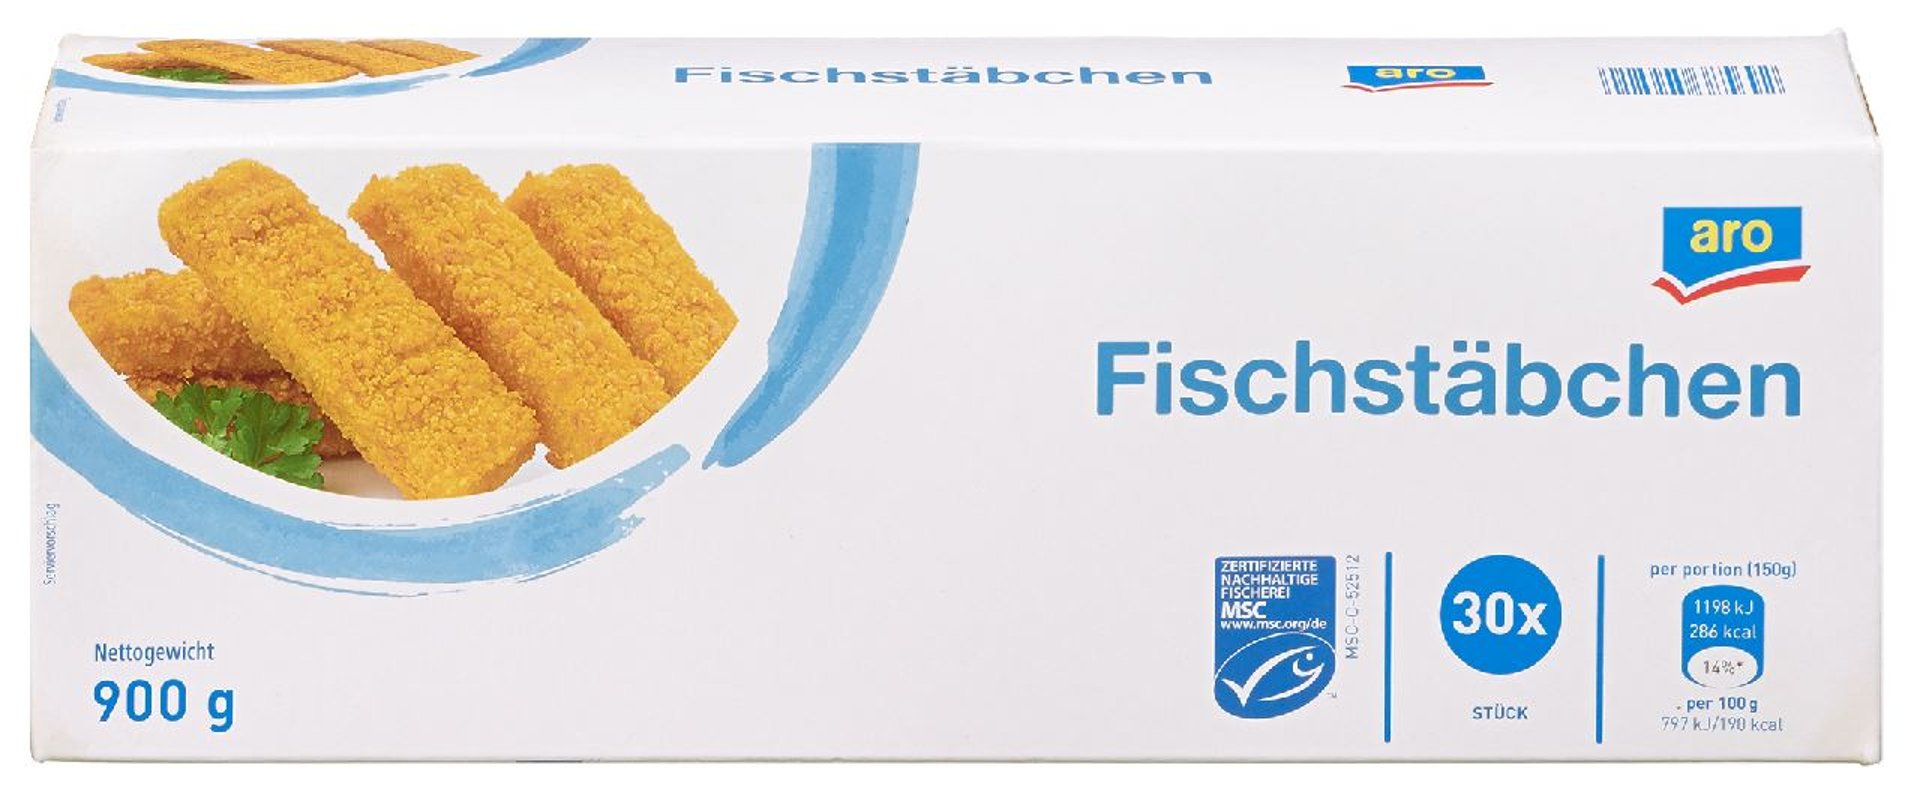 aro - MSC Fischstäbchen 30 Stück à ca. 30 g, tiefgefroren - 900 g Packung